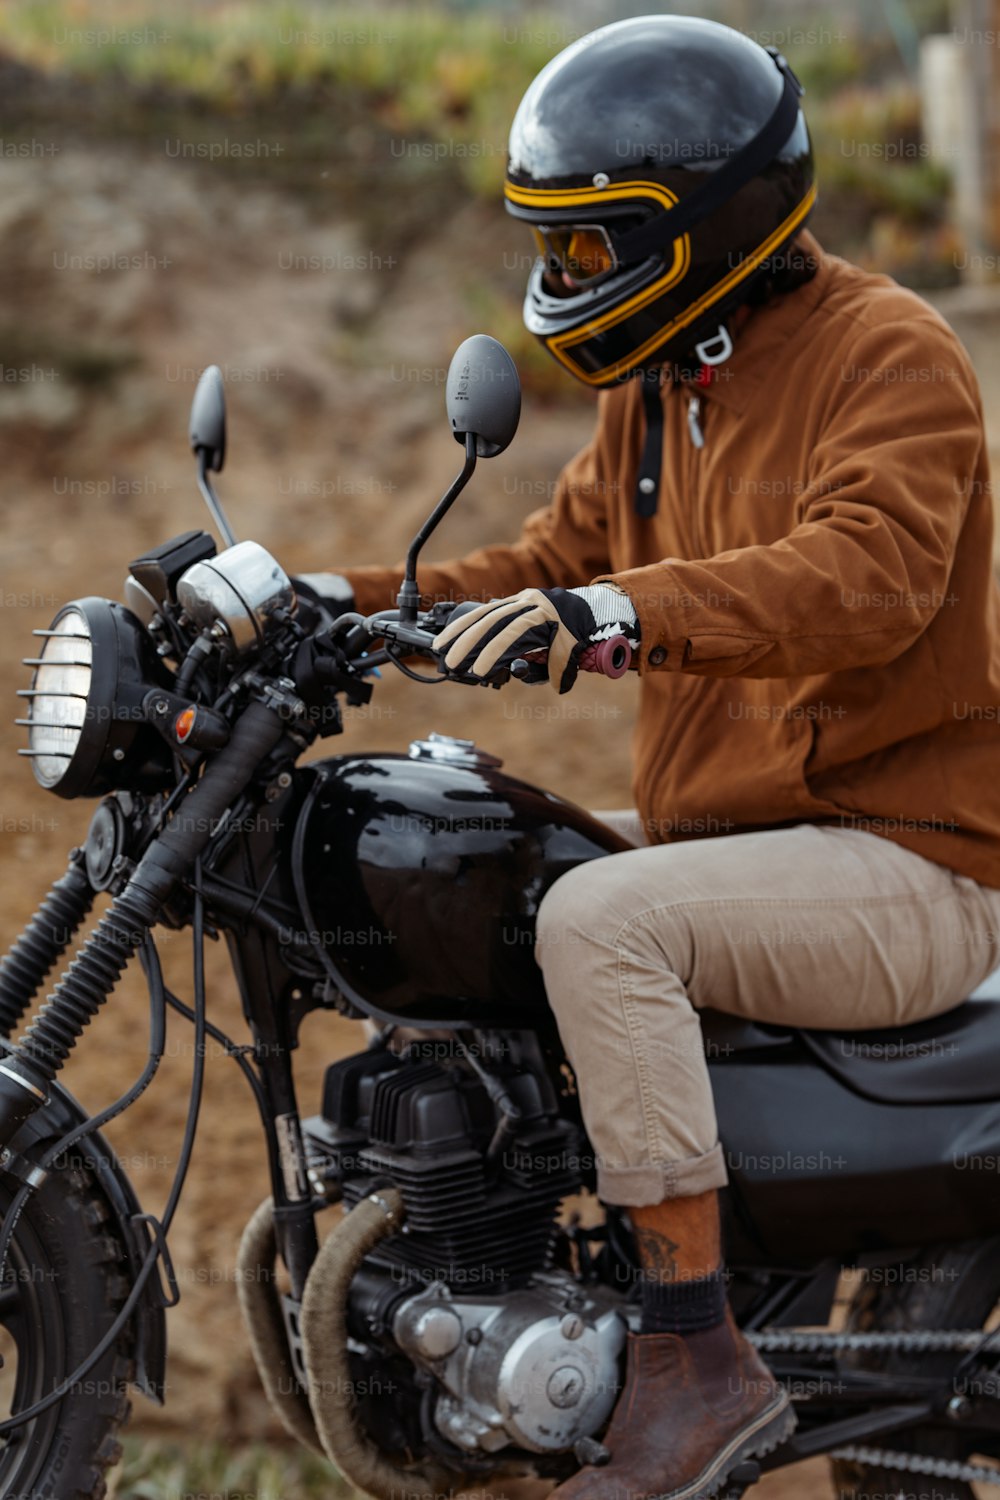 Un uomo con un casco sta guidando una motocicletta